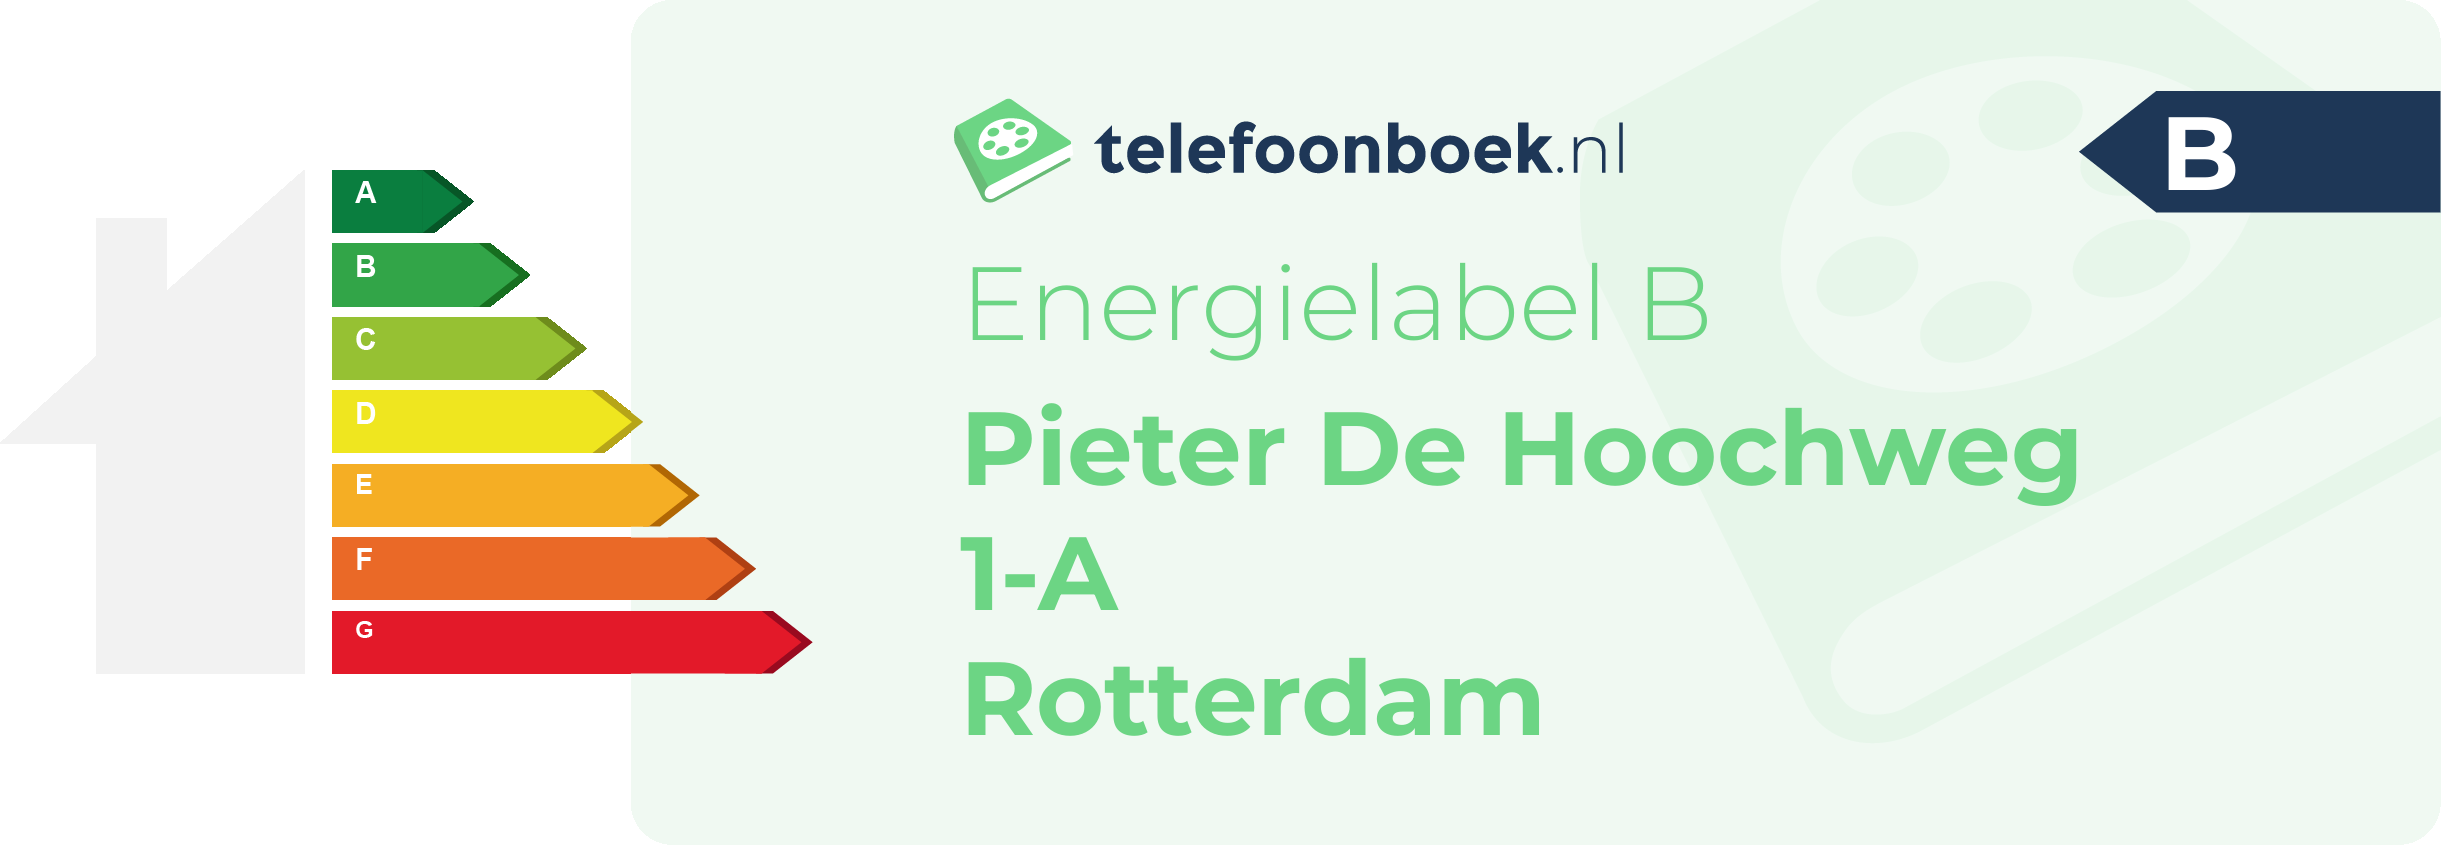 Energielabel Pieter De Hoochweg 1-A Rotterdam